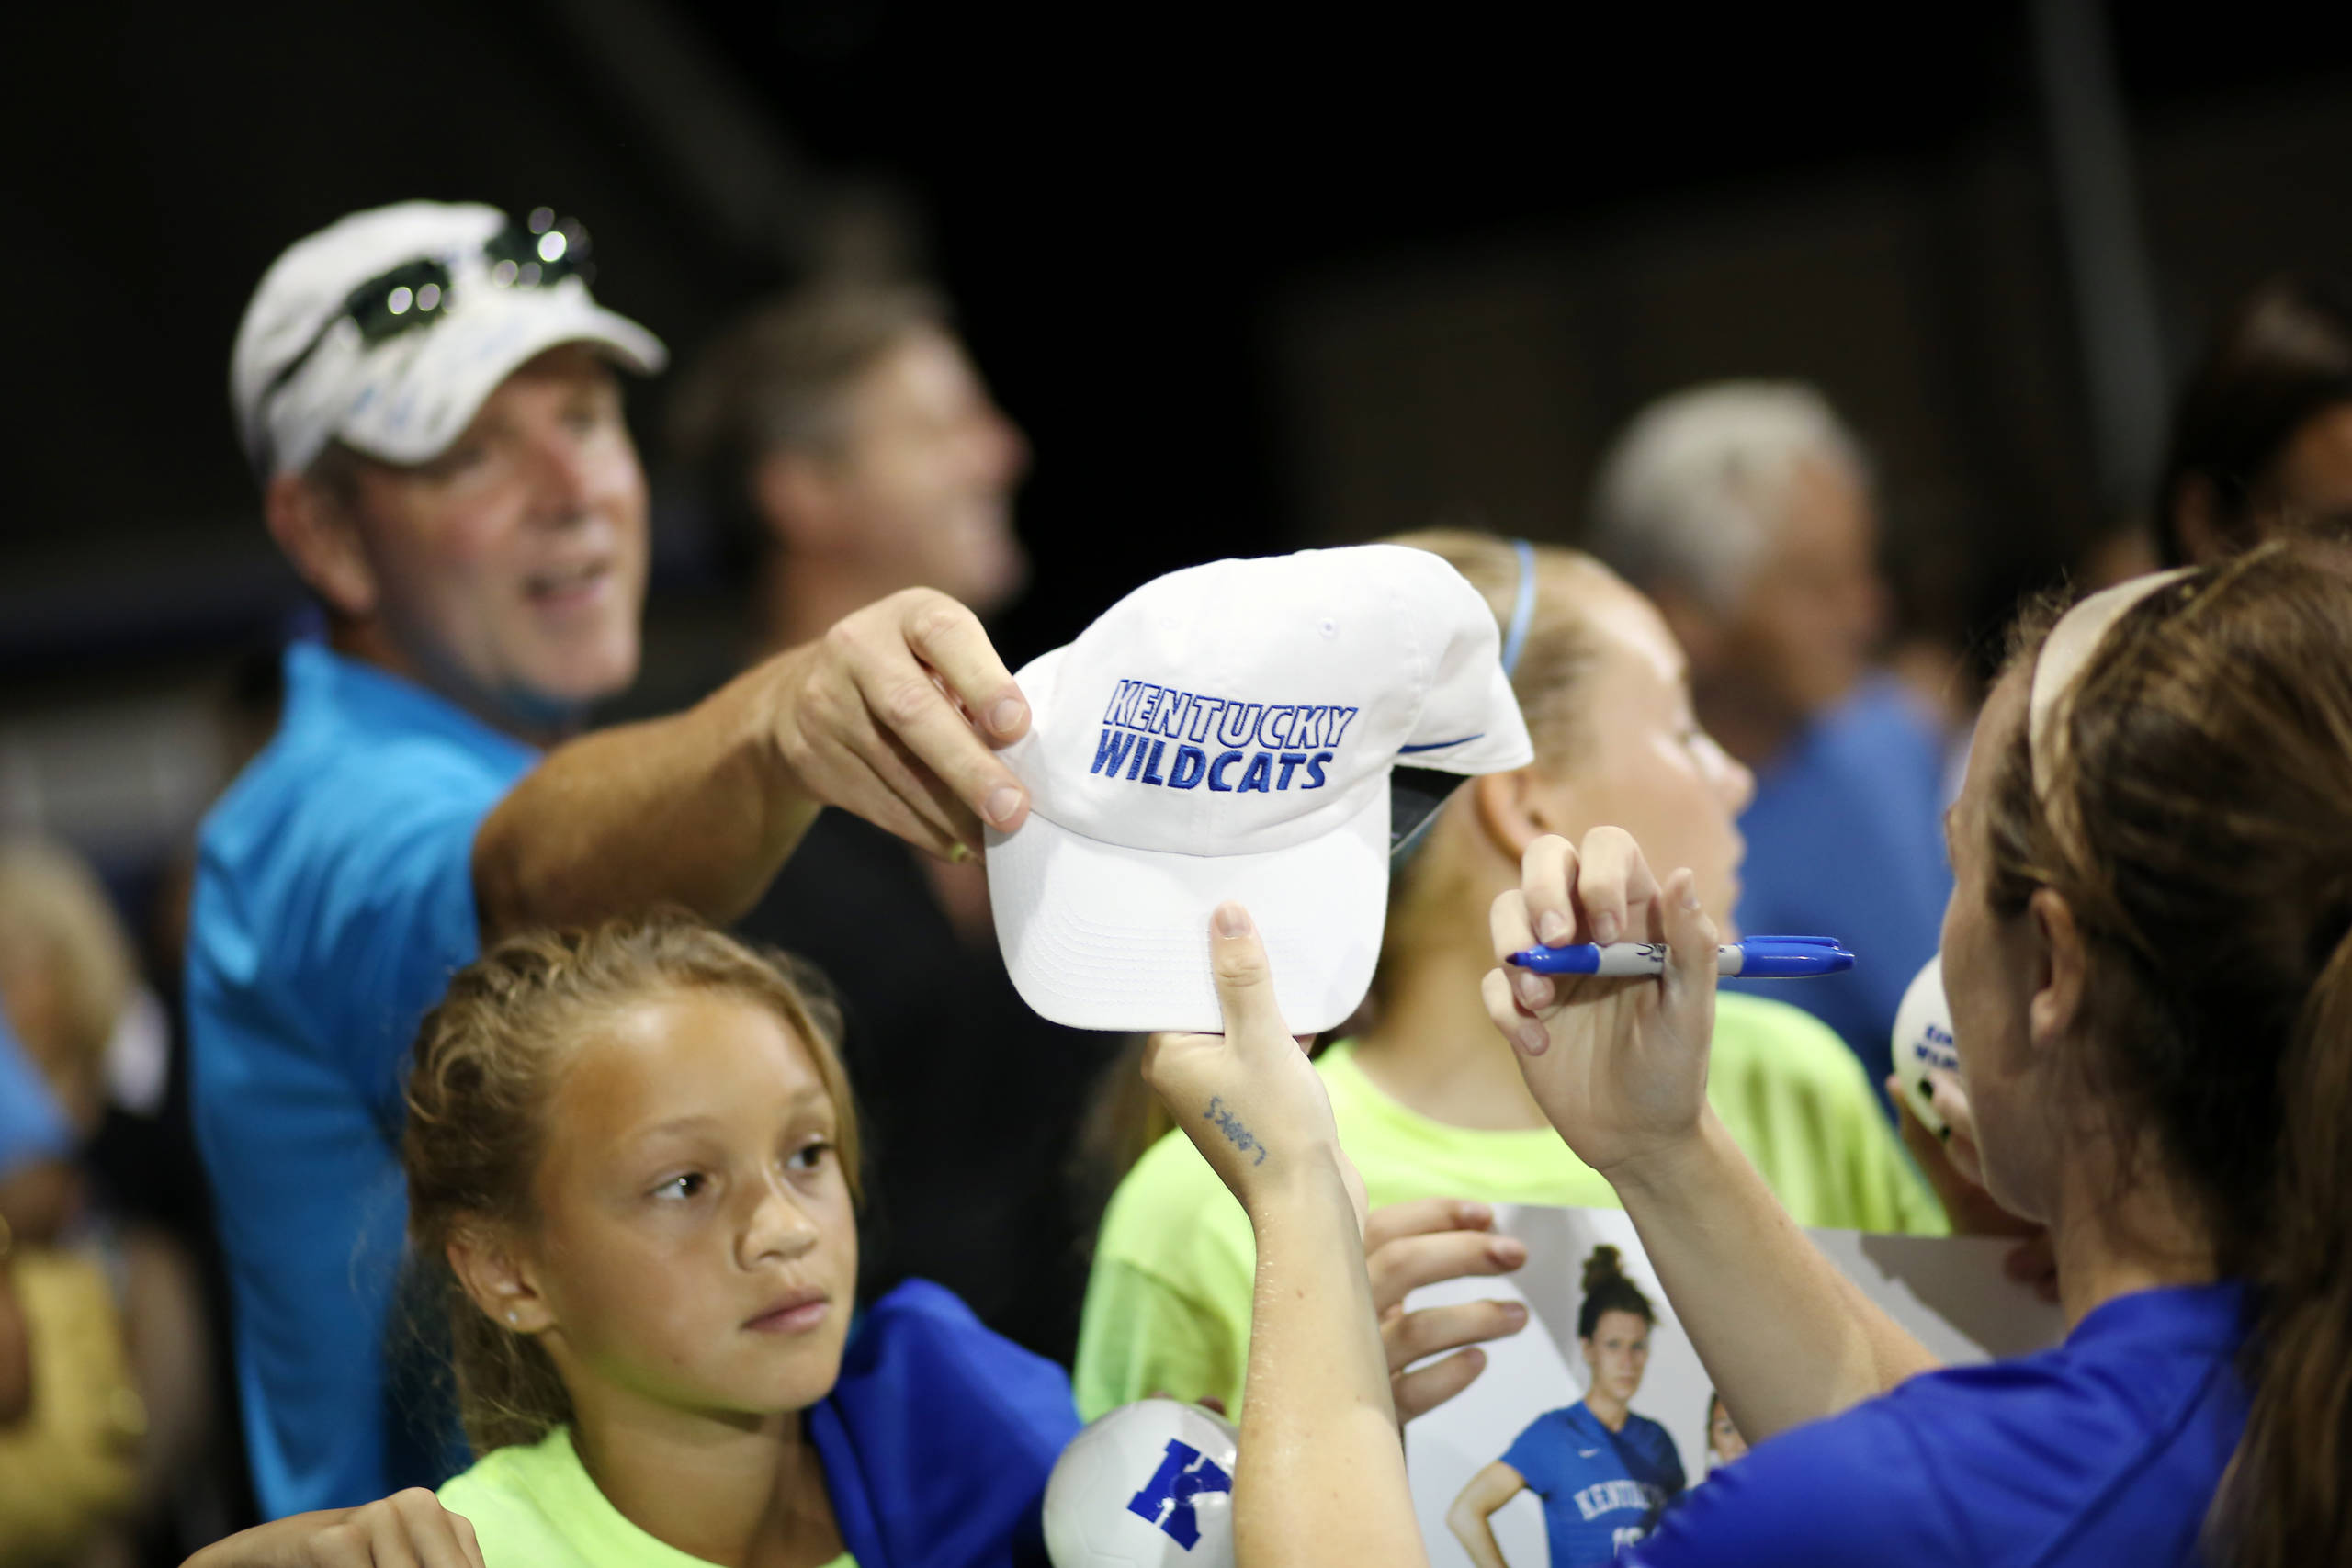 Kentucky Women’s Soccer Seeking Ball Kids, Escorts for 2015